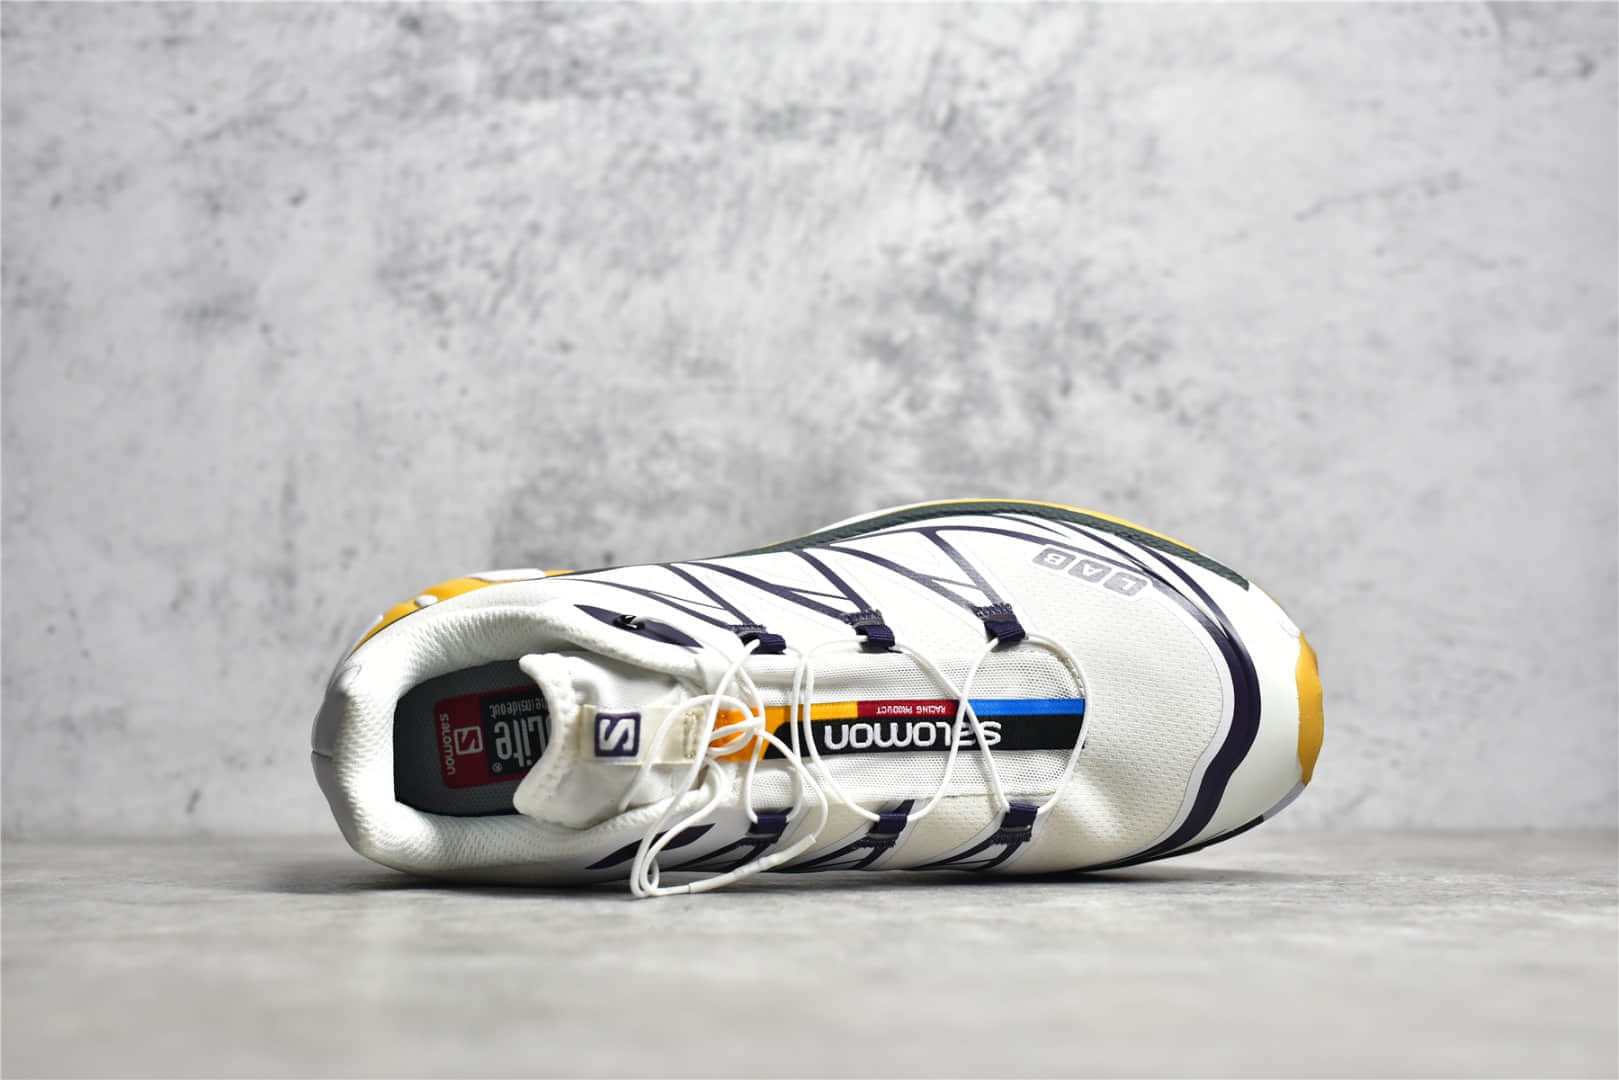 萨洛蒙白色 Salomon 萨洛蒙 XT-6 复古机能跑鞋 莆田复刻鞋实拍-潮流者之家